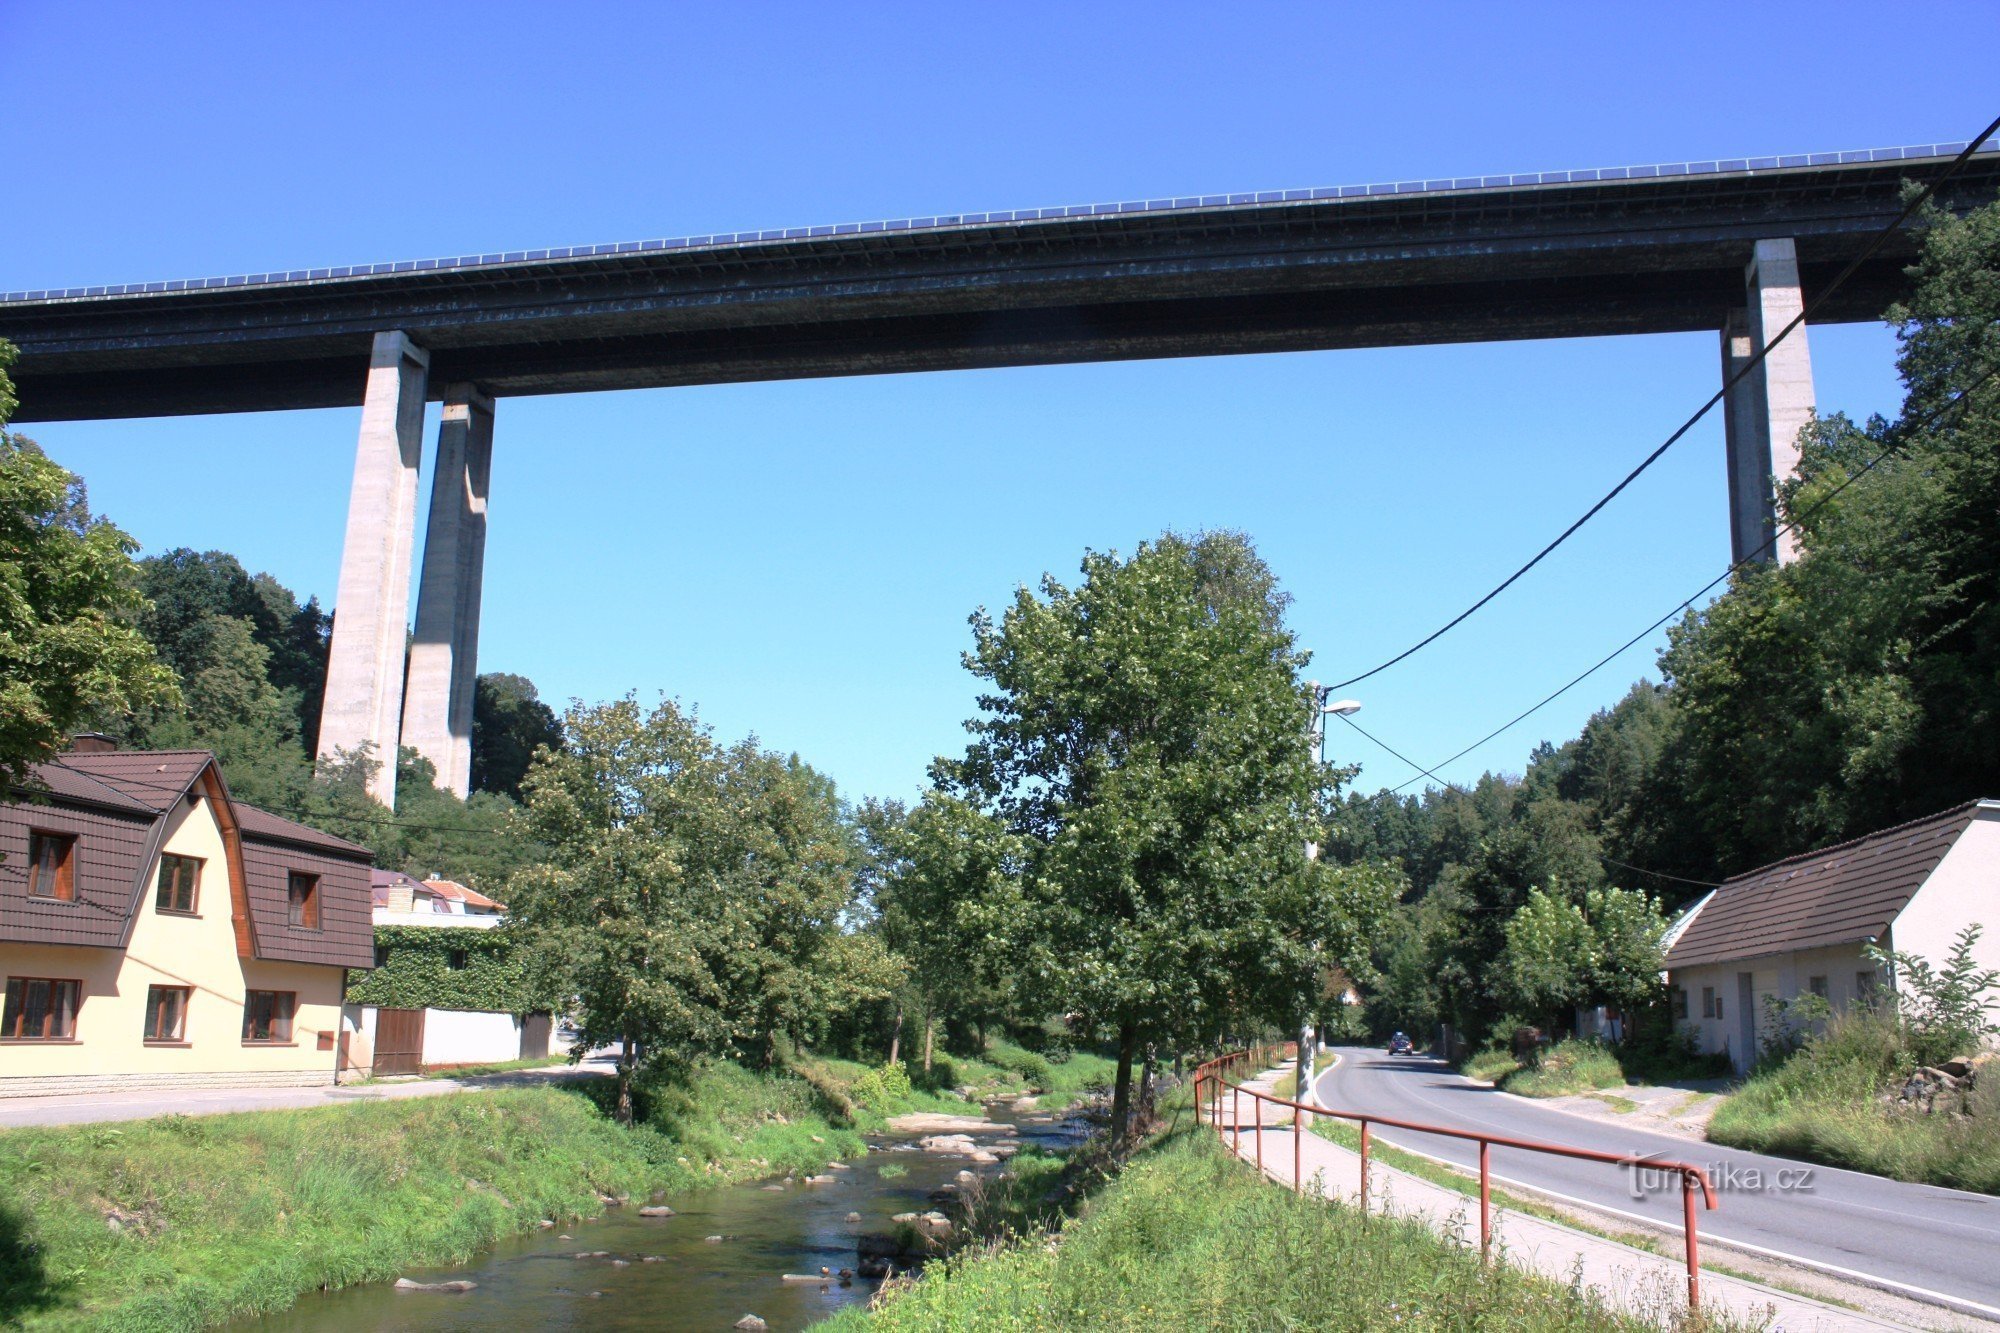 Pont autoroutier Velké Meziříčí - Vysočina